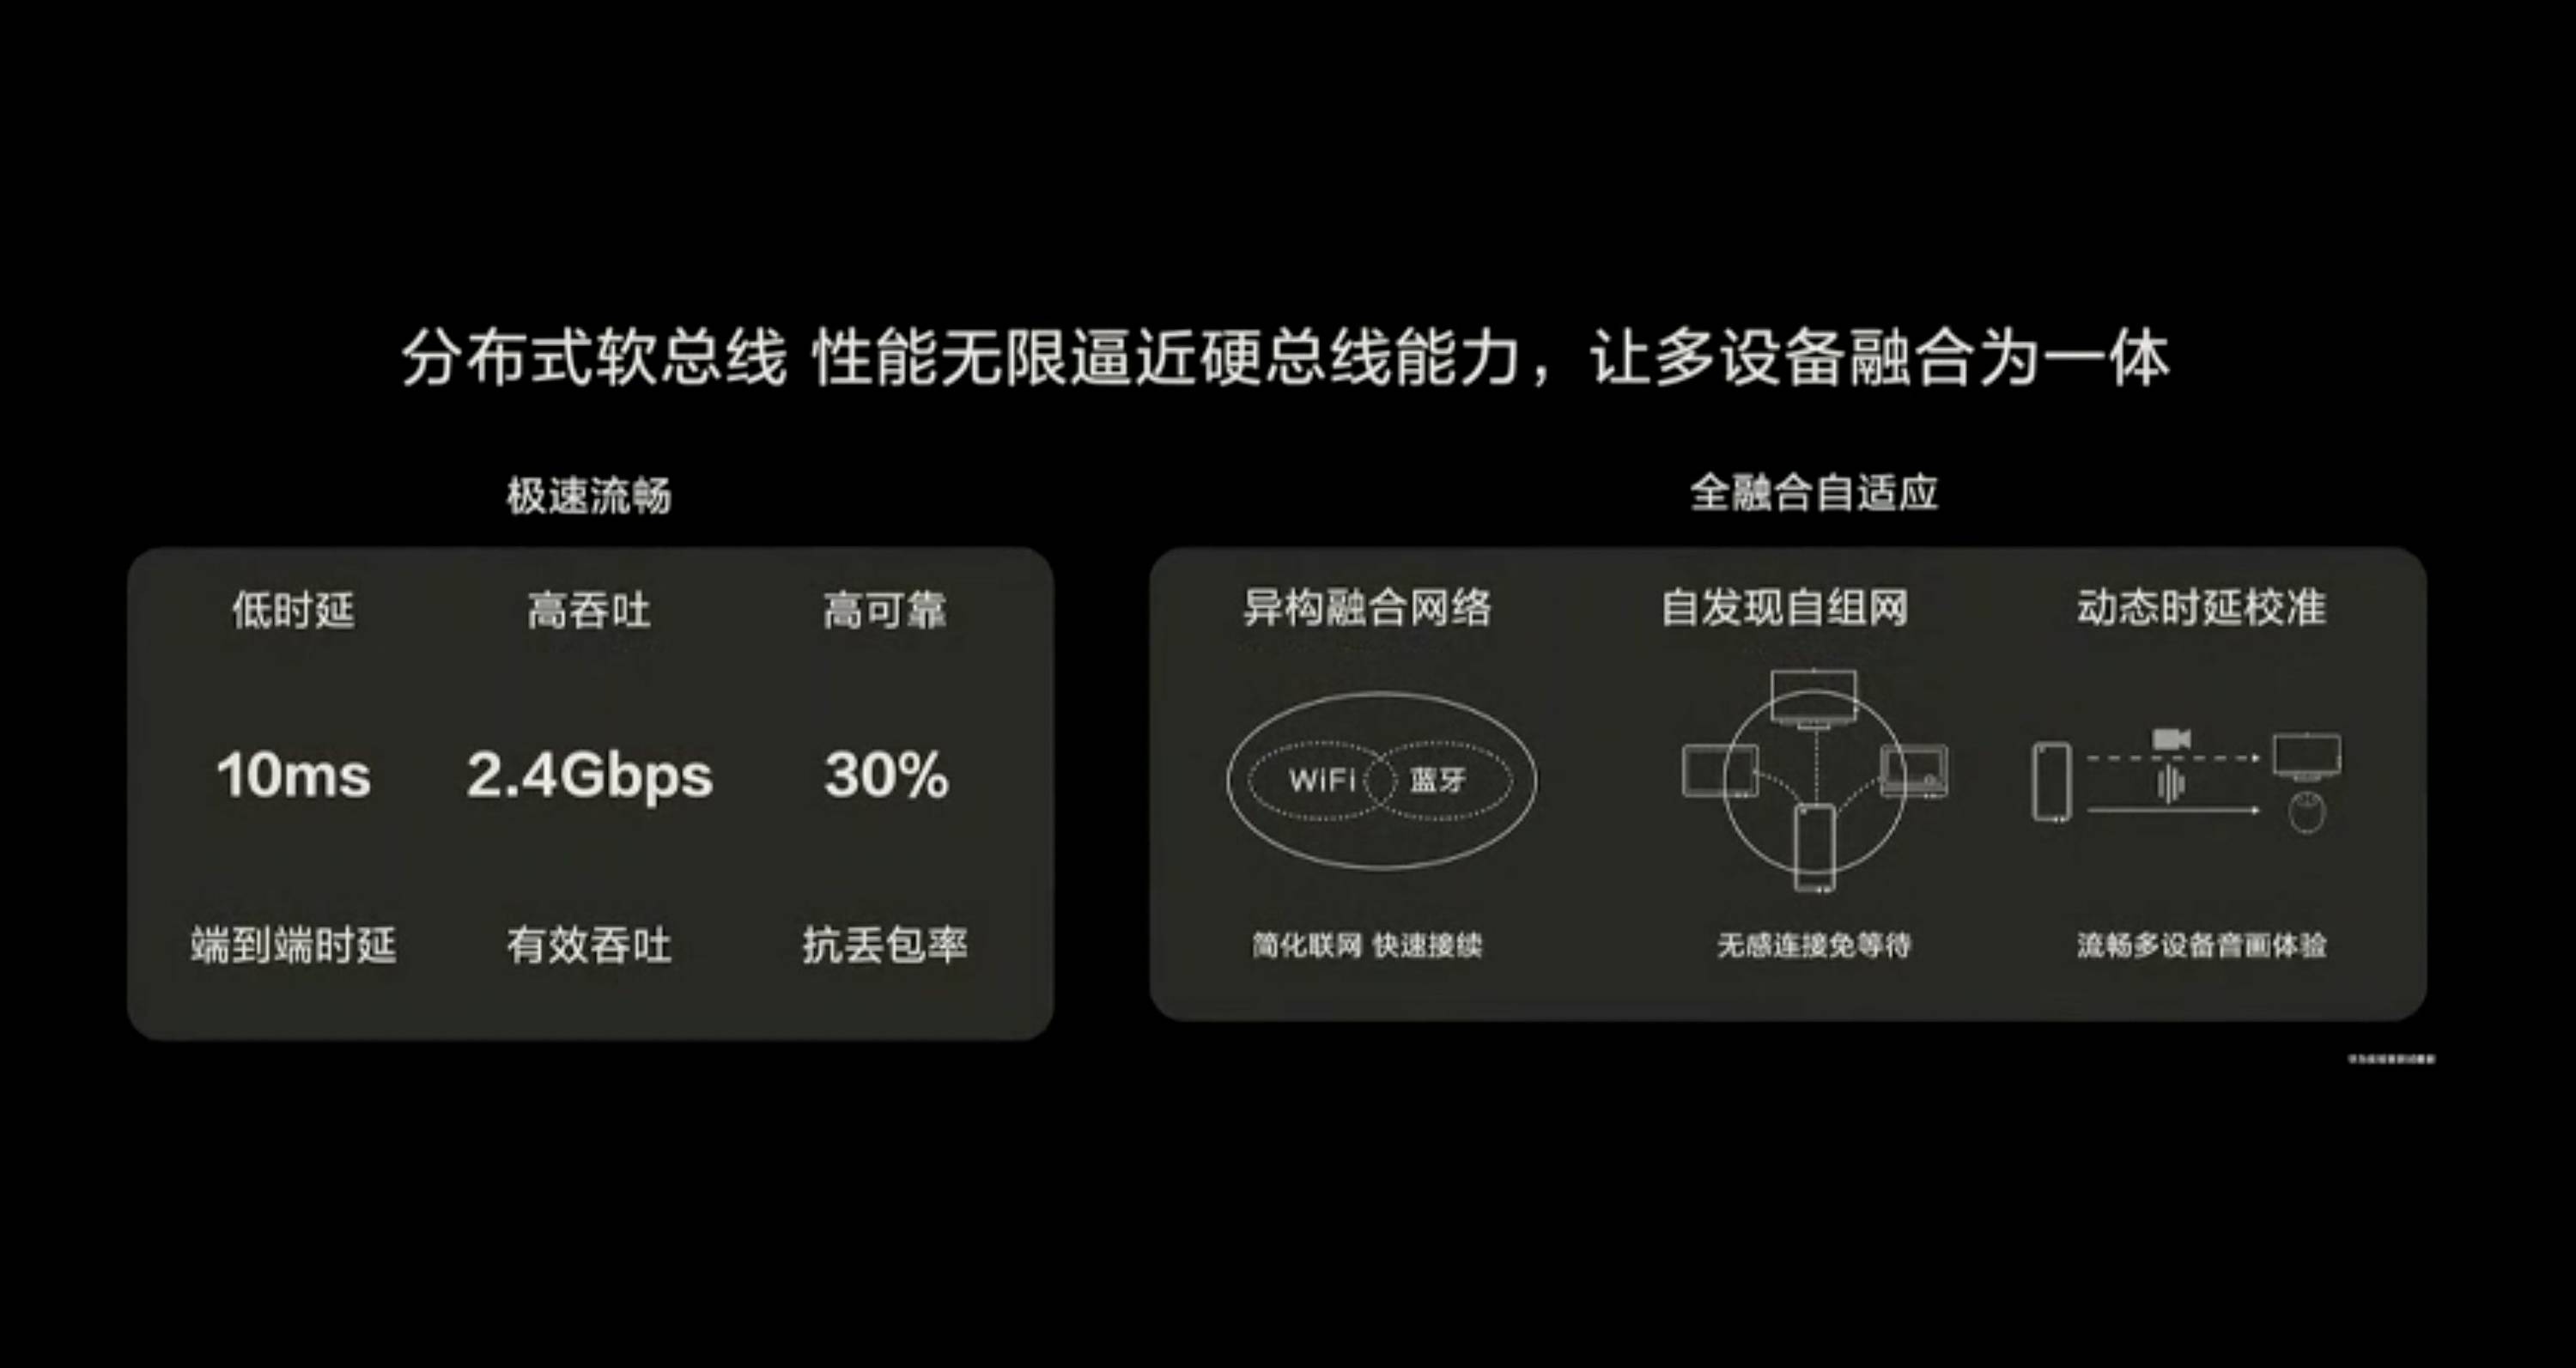 HDC 2020 PPT 48 - Huawei Hongmeng 2.0 è qui! Se non esegui un secondo Android, sarai sul tuo telefono entro la fine dell’anno